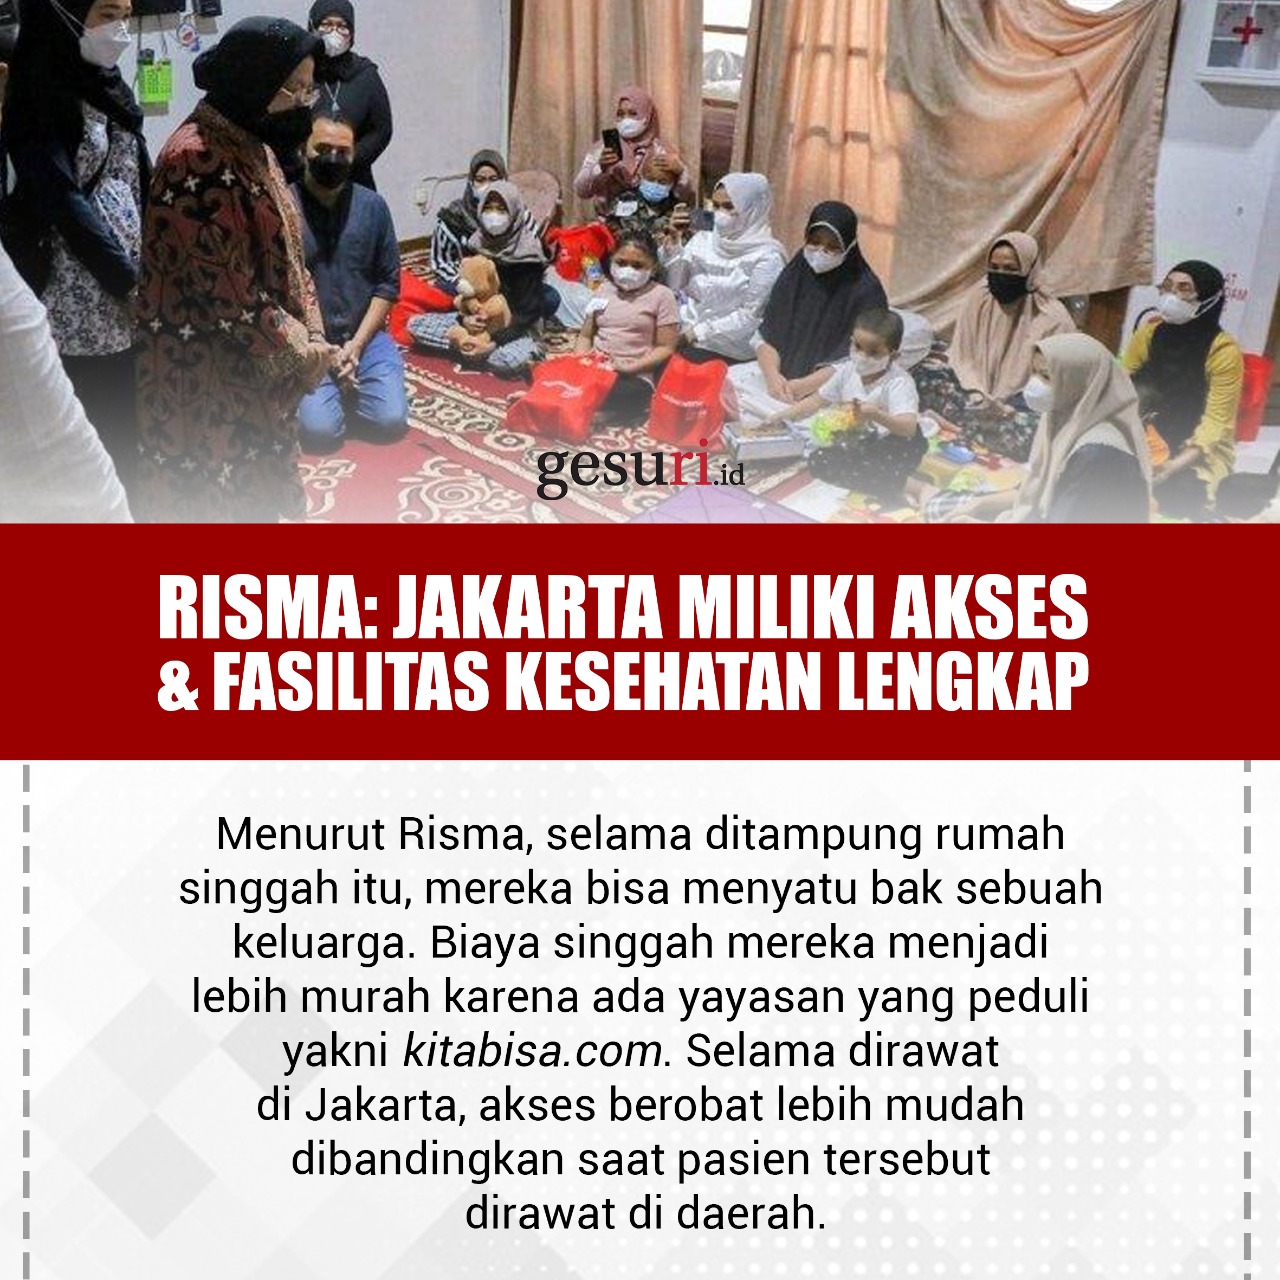 Jakarta Miliki Akses & Fasilitas Kesehatan Lengkap (3/3)